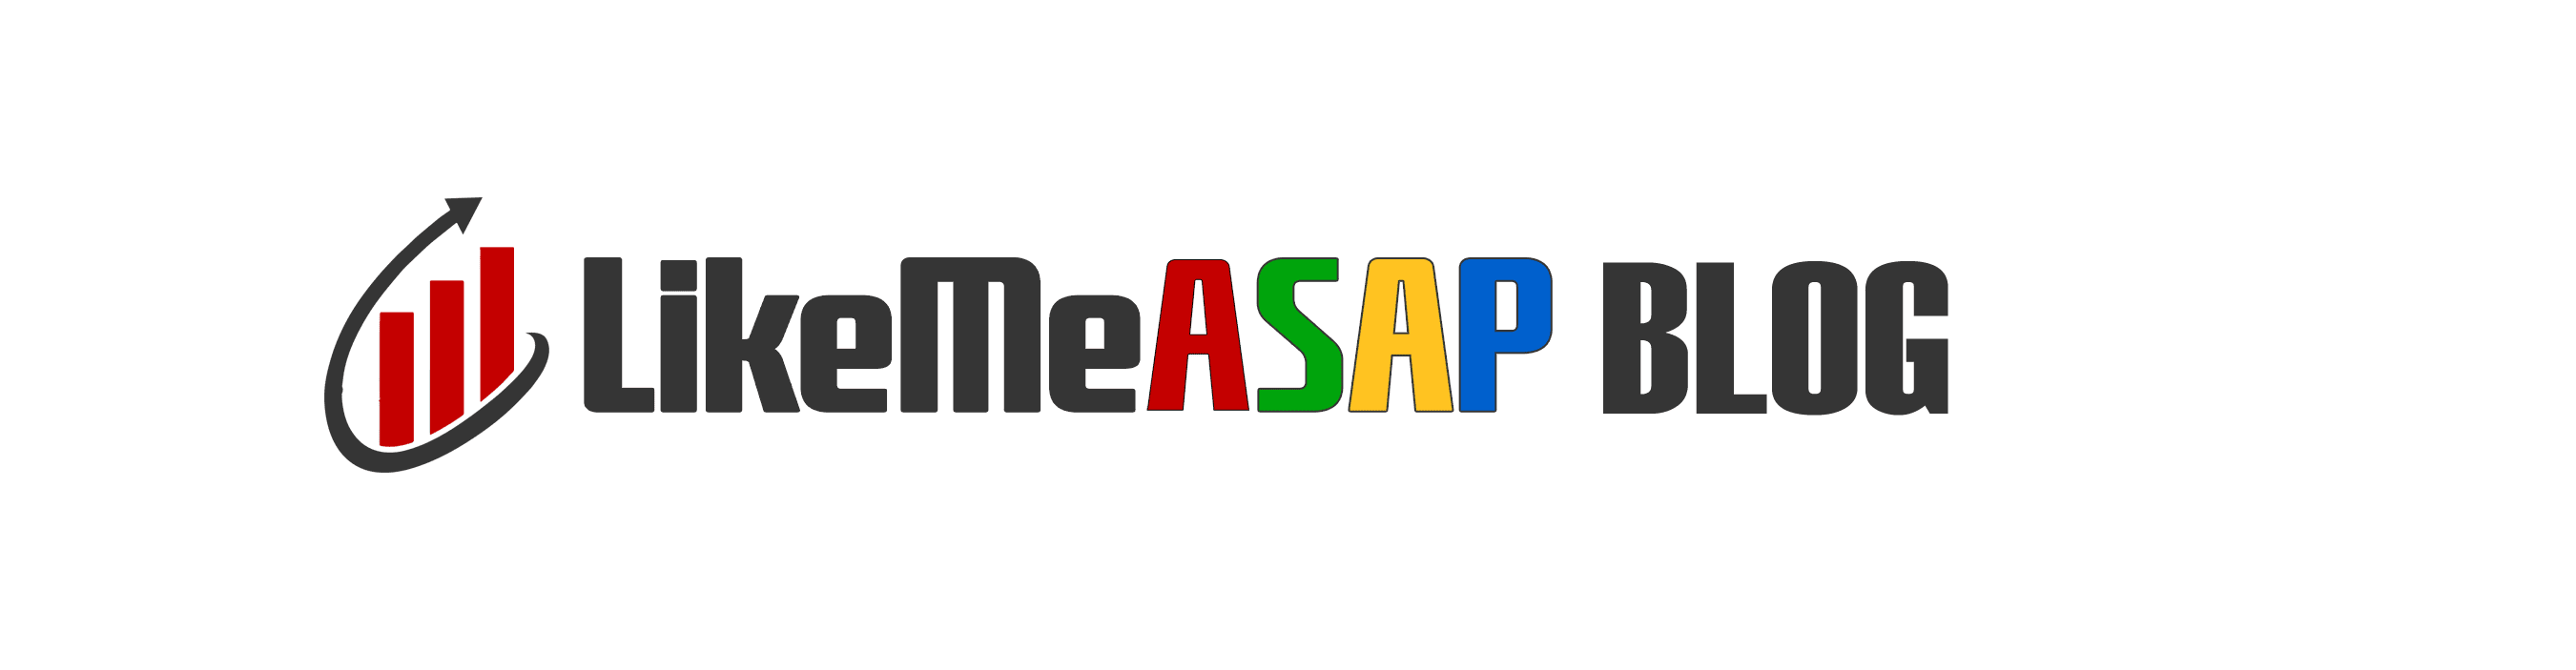 LikeMeASAP_logo_blog